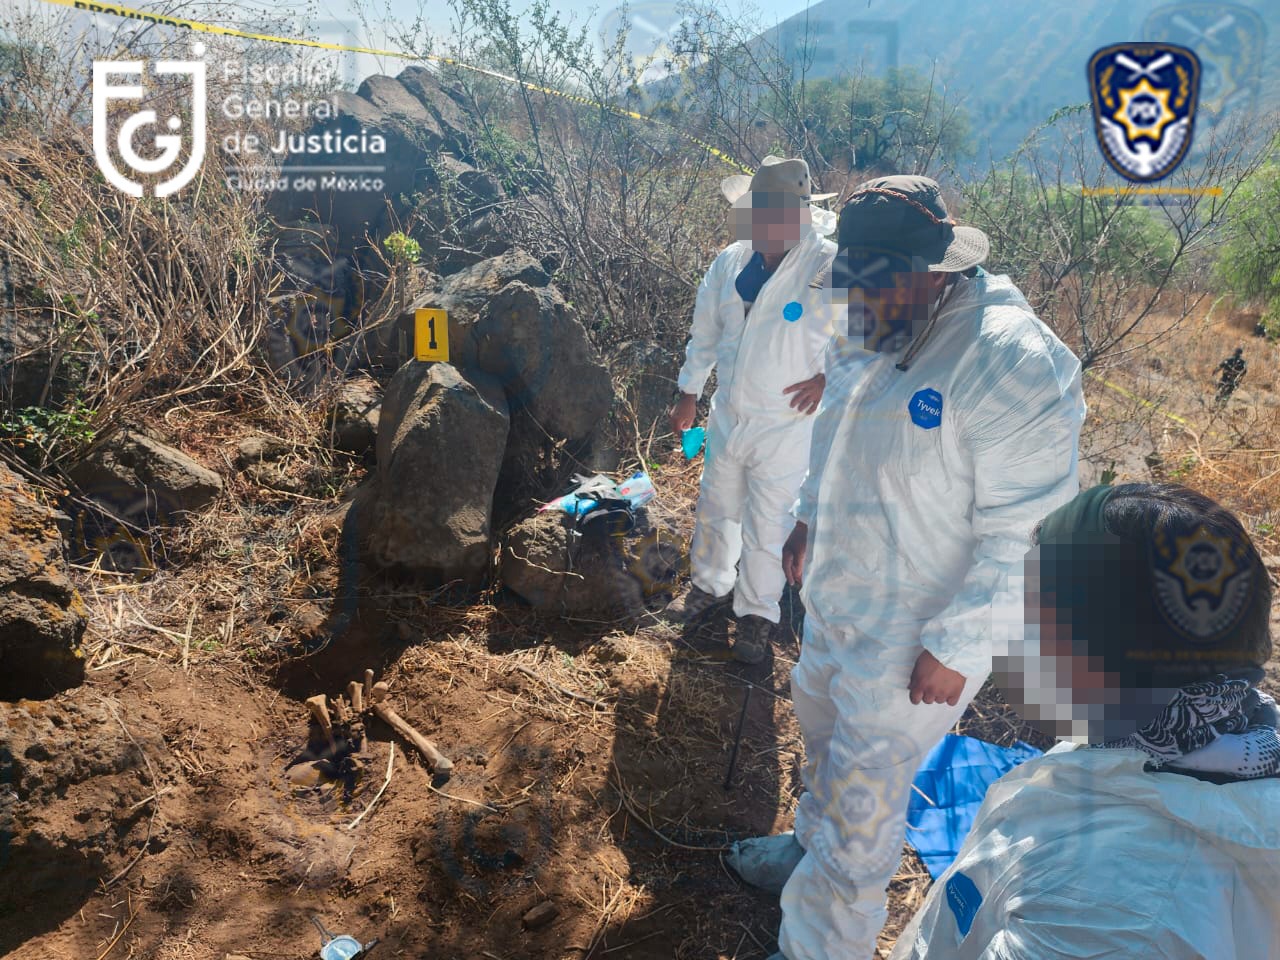 Confirma Fiscalía CDMX el hallazgo de restos óseos en Iztapalapa; acusa manipulación de pruebas